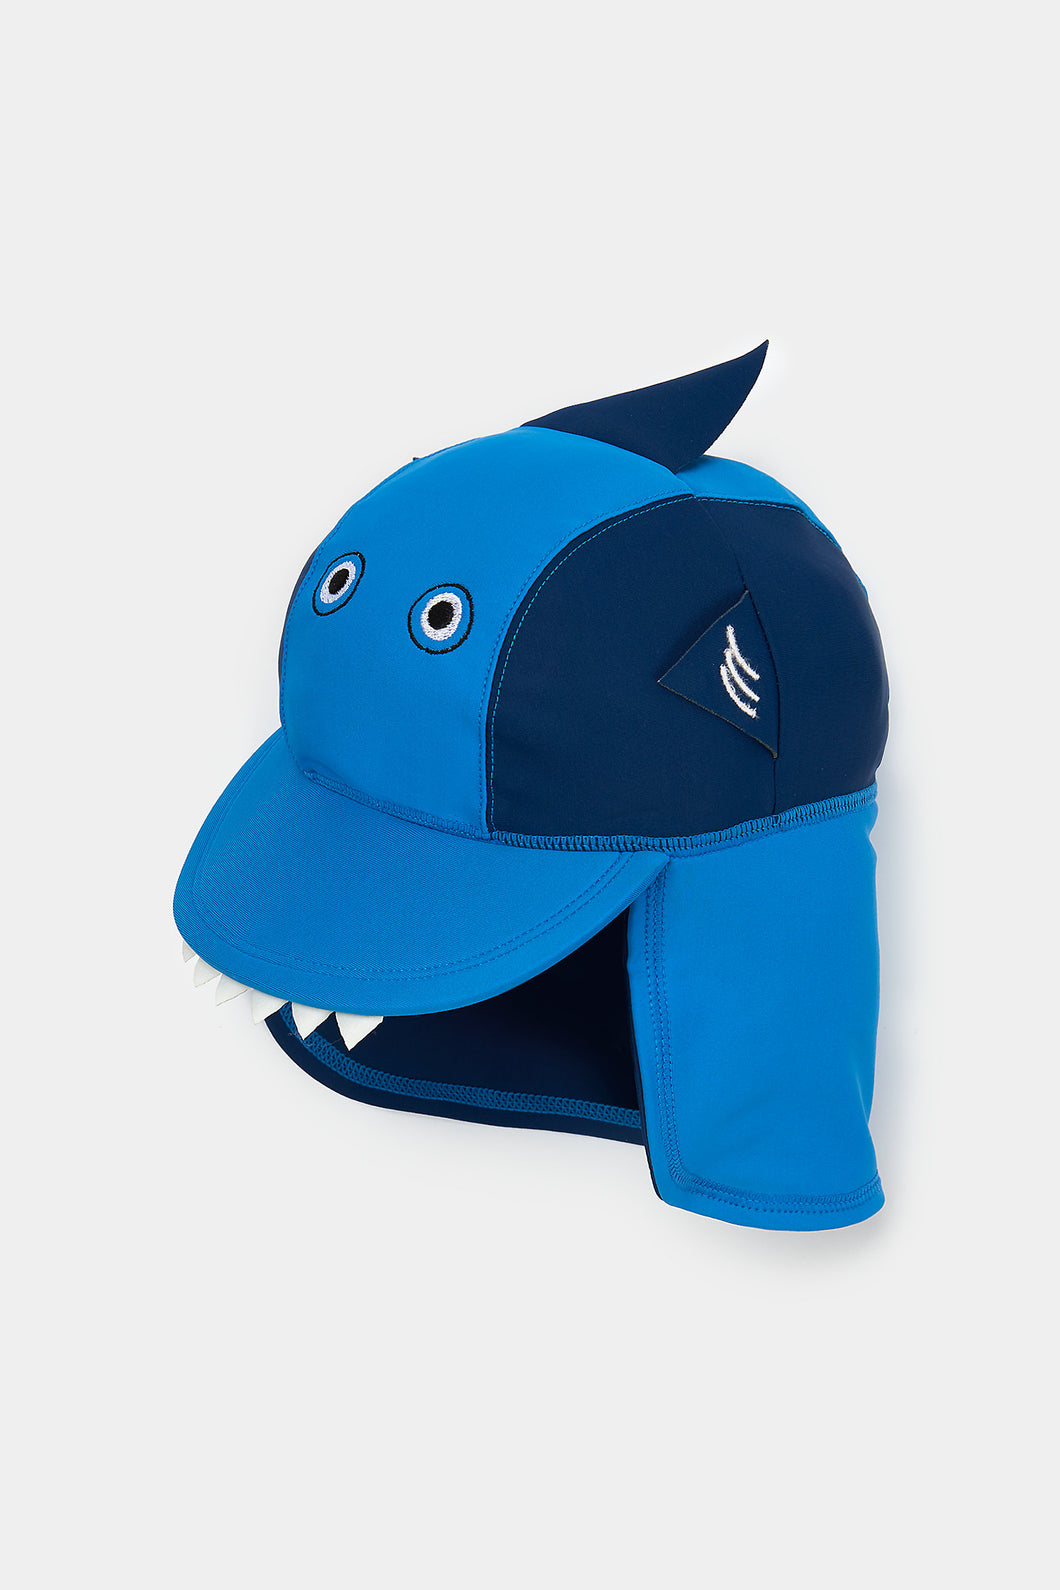 Mothercare Shark Sunsafe Keppi Hat